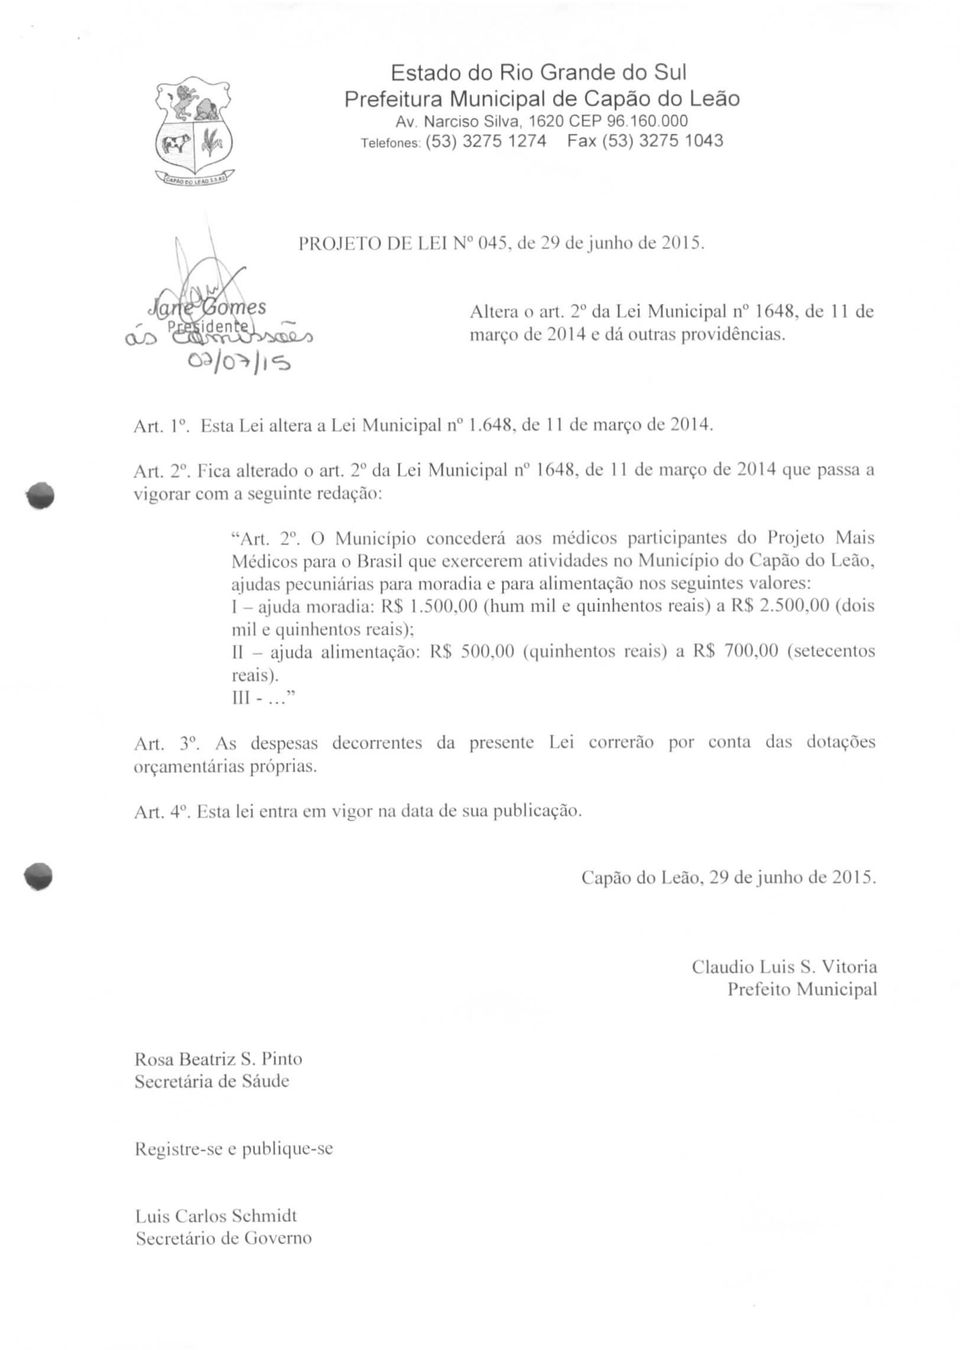 2 da Lei Municipal n" 1648. de 11 de março de 2014 que passa a vigorar com a seguinte redação: "Art. 2".